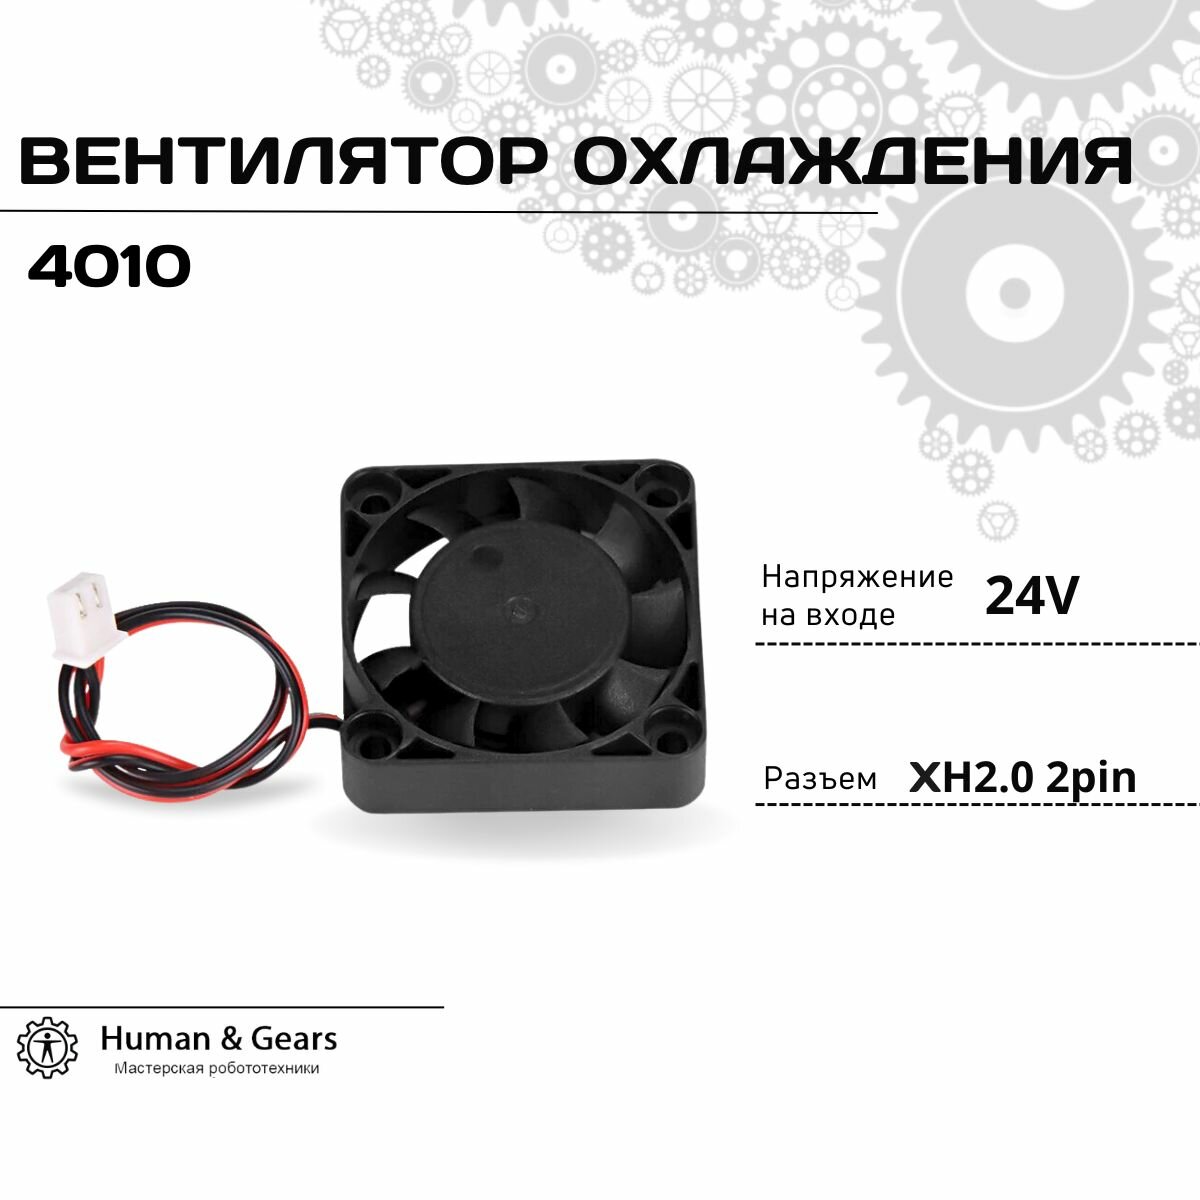 Вентилятор охлаждения 4010 24V кулер для компьютера cooler для 3D принтера 40х40х10 мм